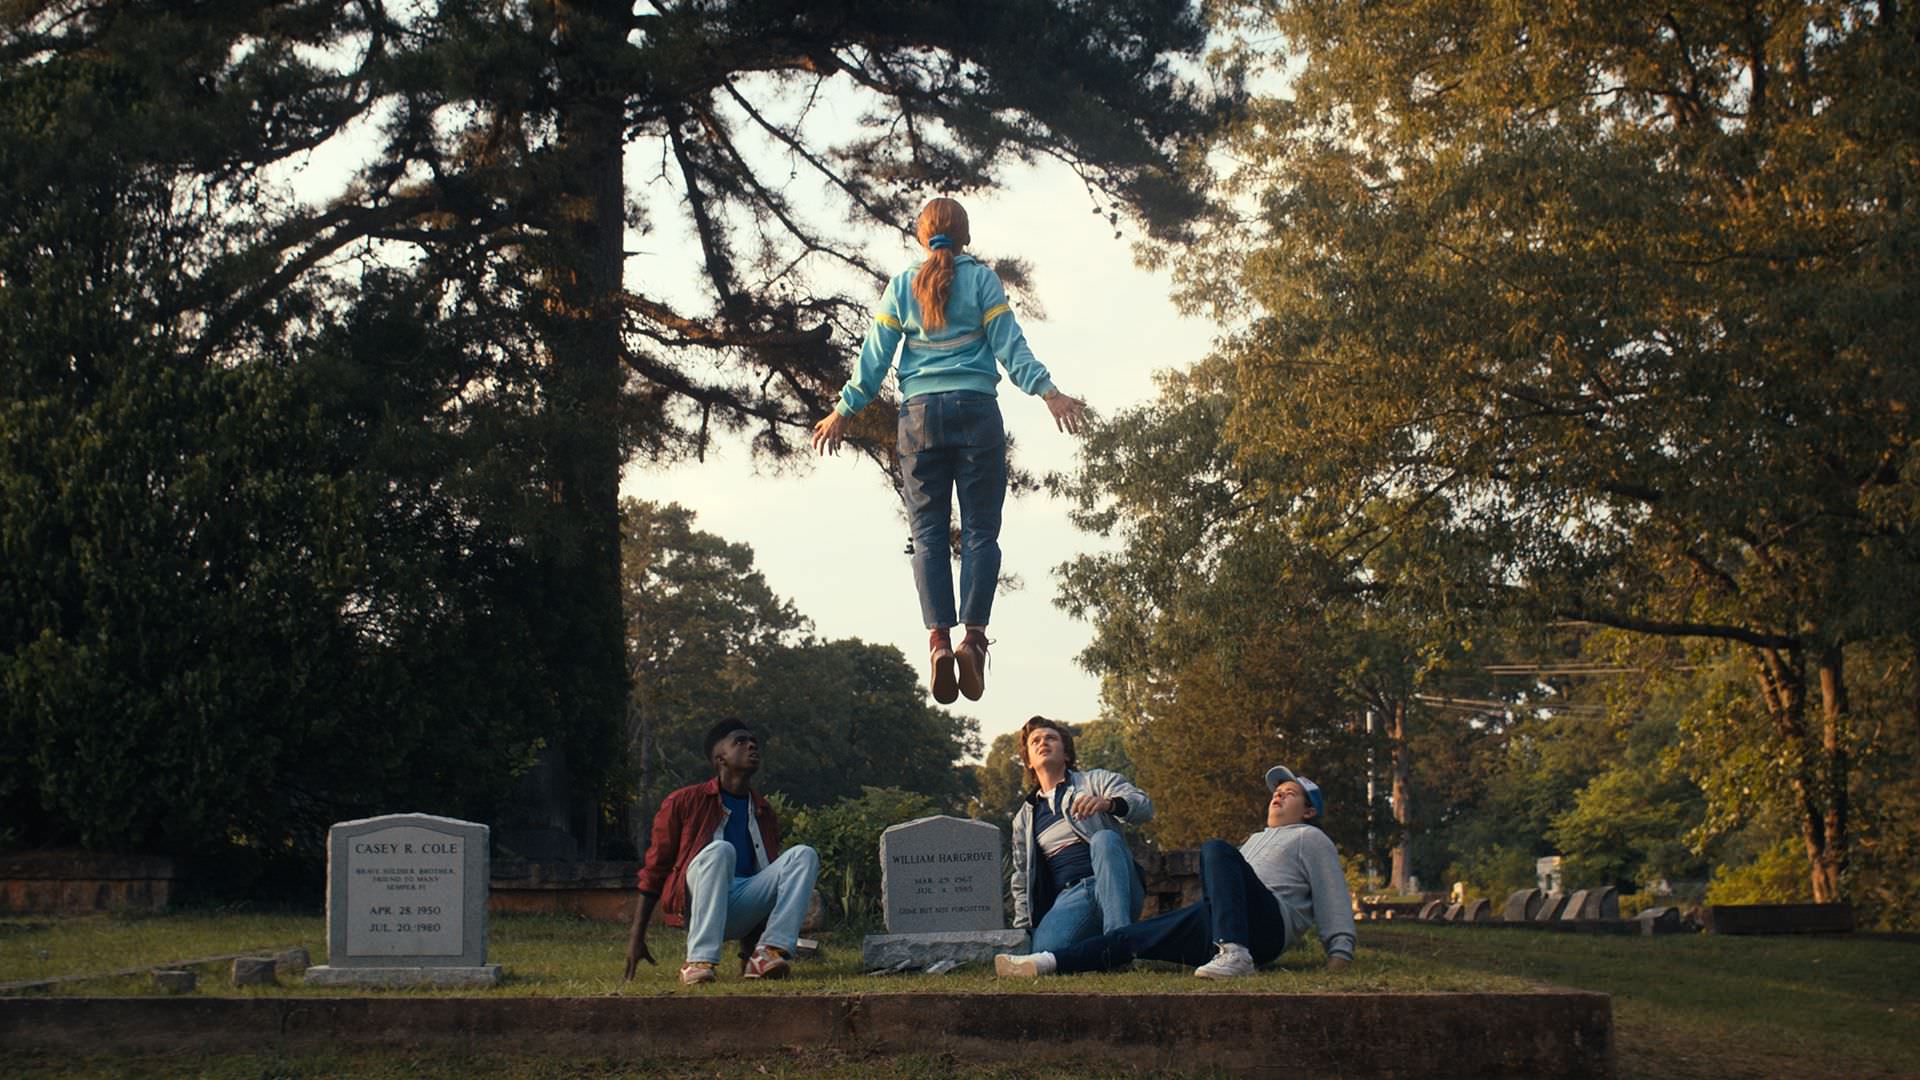 مکس در حال بلند شدن در آسمان بالای سر قبر بیلی در فصل چهارم سریال Stranger Things